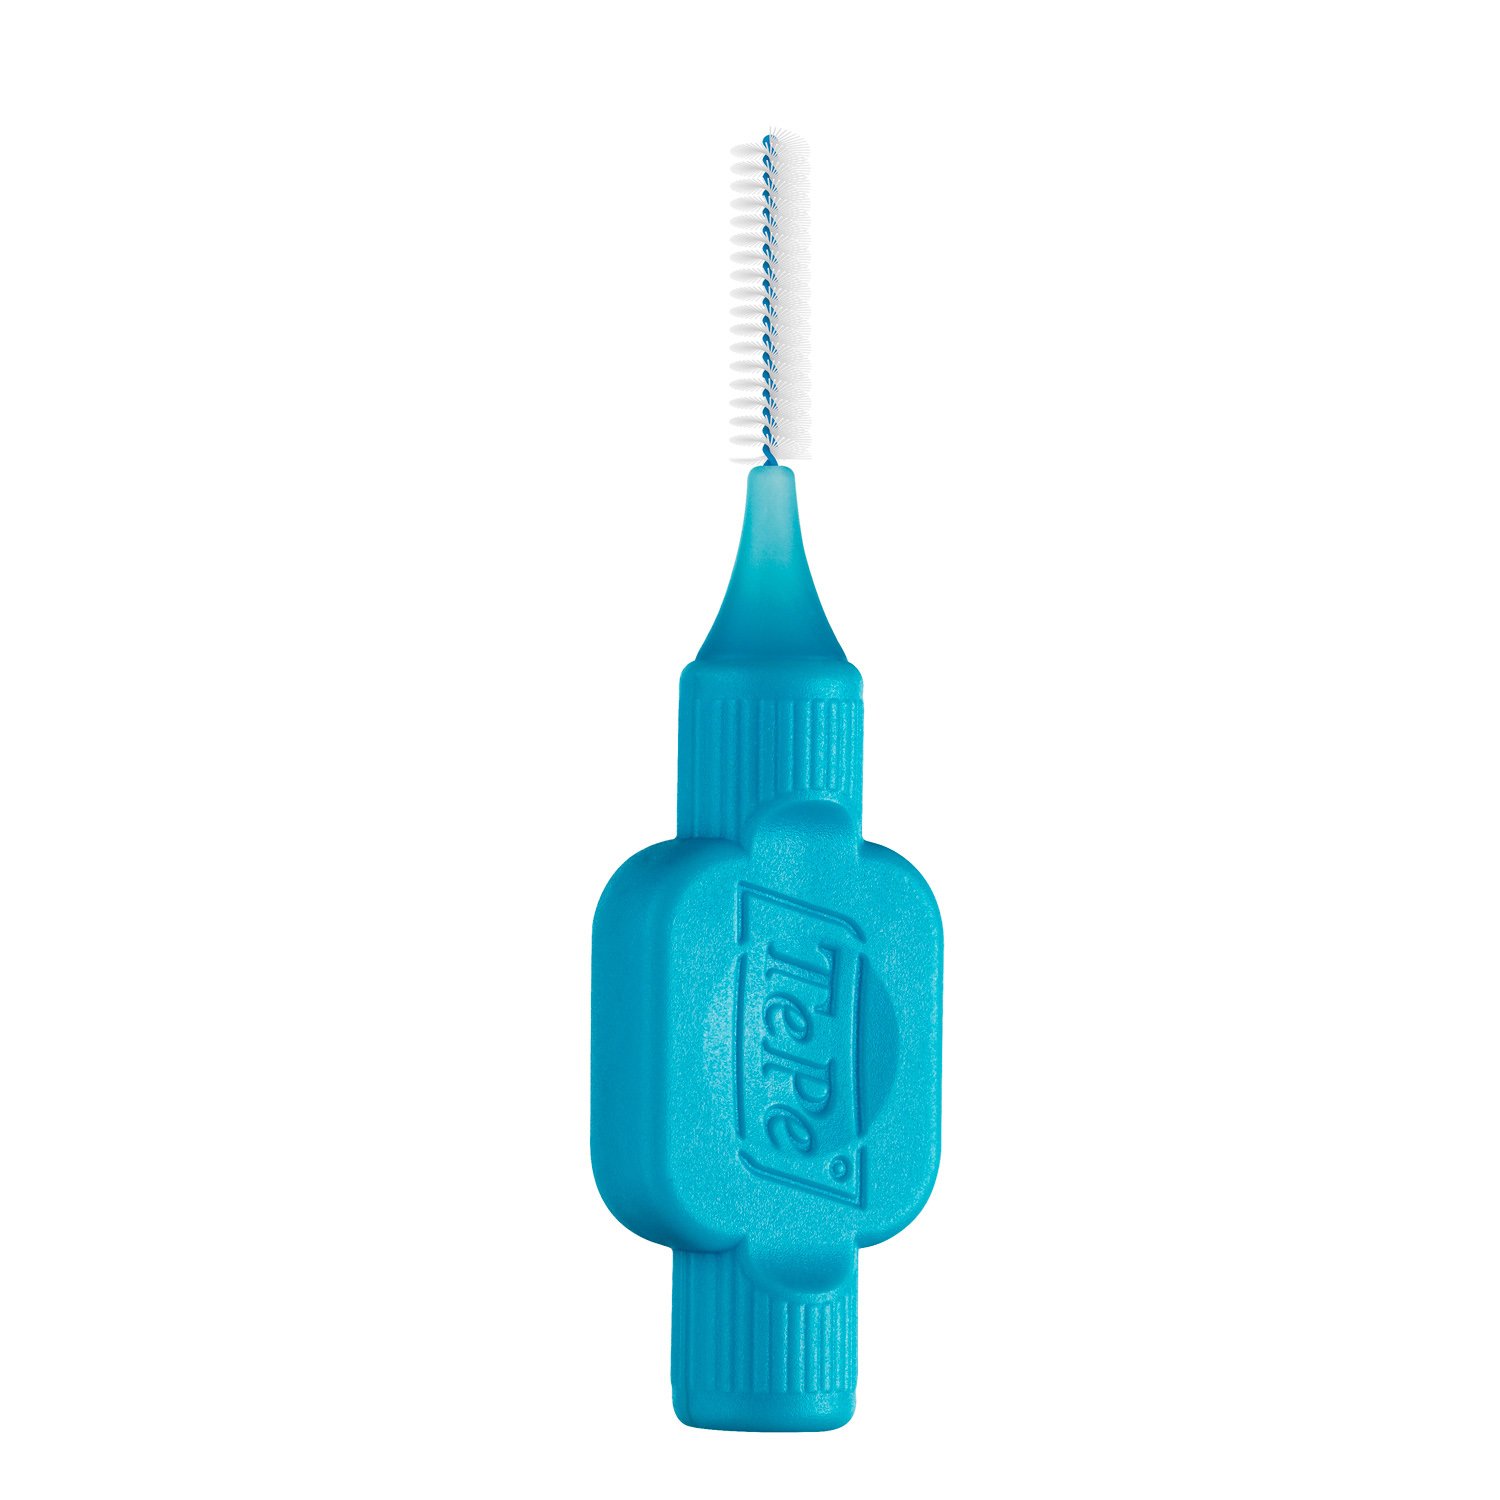 TePe Interdental Brush Original Μεσοδόντια Βουρτσάκια Ιδανικά για Άτομα με Εμφυτεύματα ή Σιδεράκια 8 Τεμάχια – Size 3 / 0.6mm